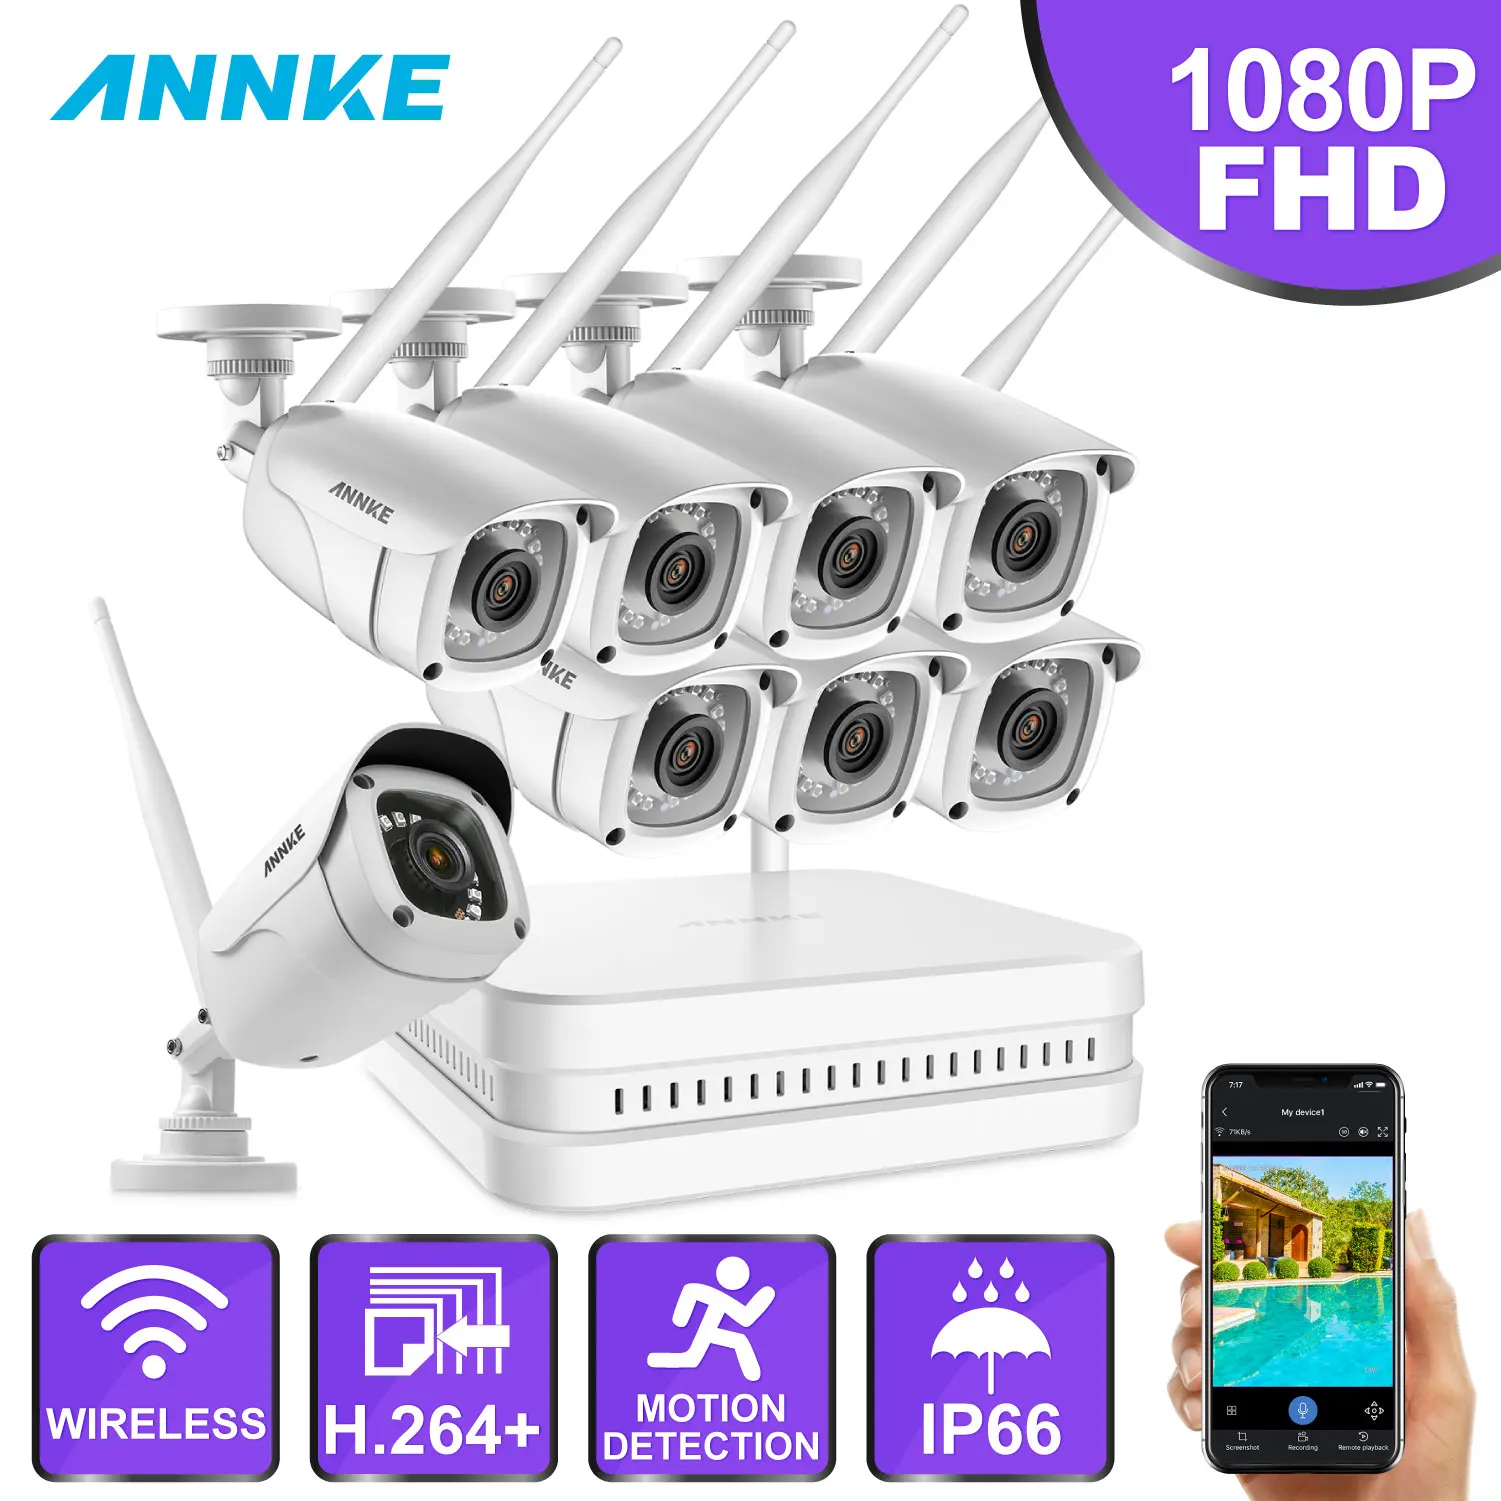 ANNKE 8CH 1080P FHD WiFi NVR система видеонаблюдения с 2-мегапиксельной пулей всепогодные IP камеры 100ft ночного видения с умным ИК